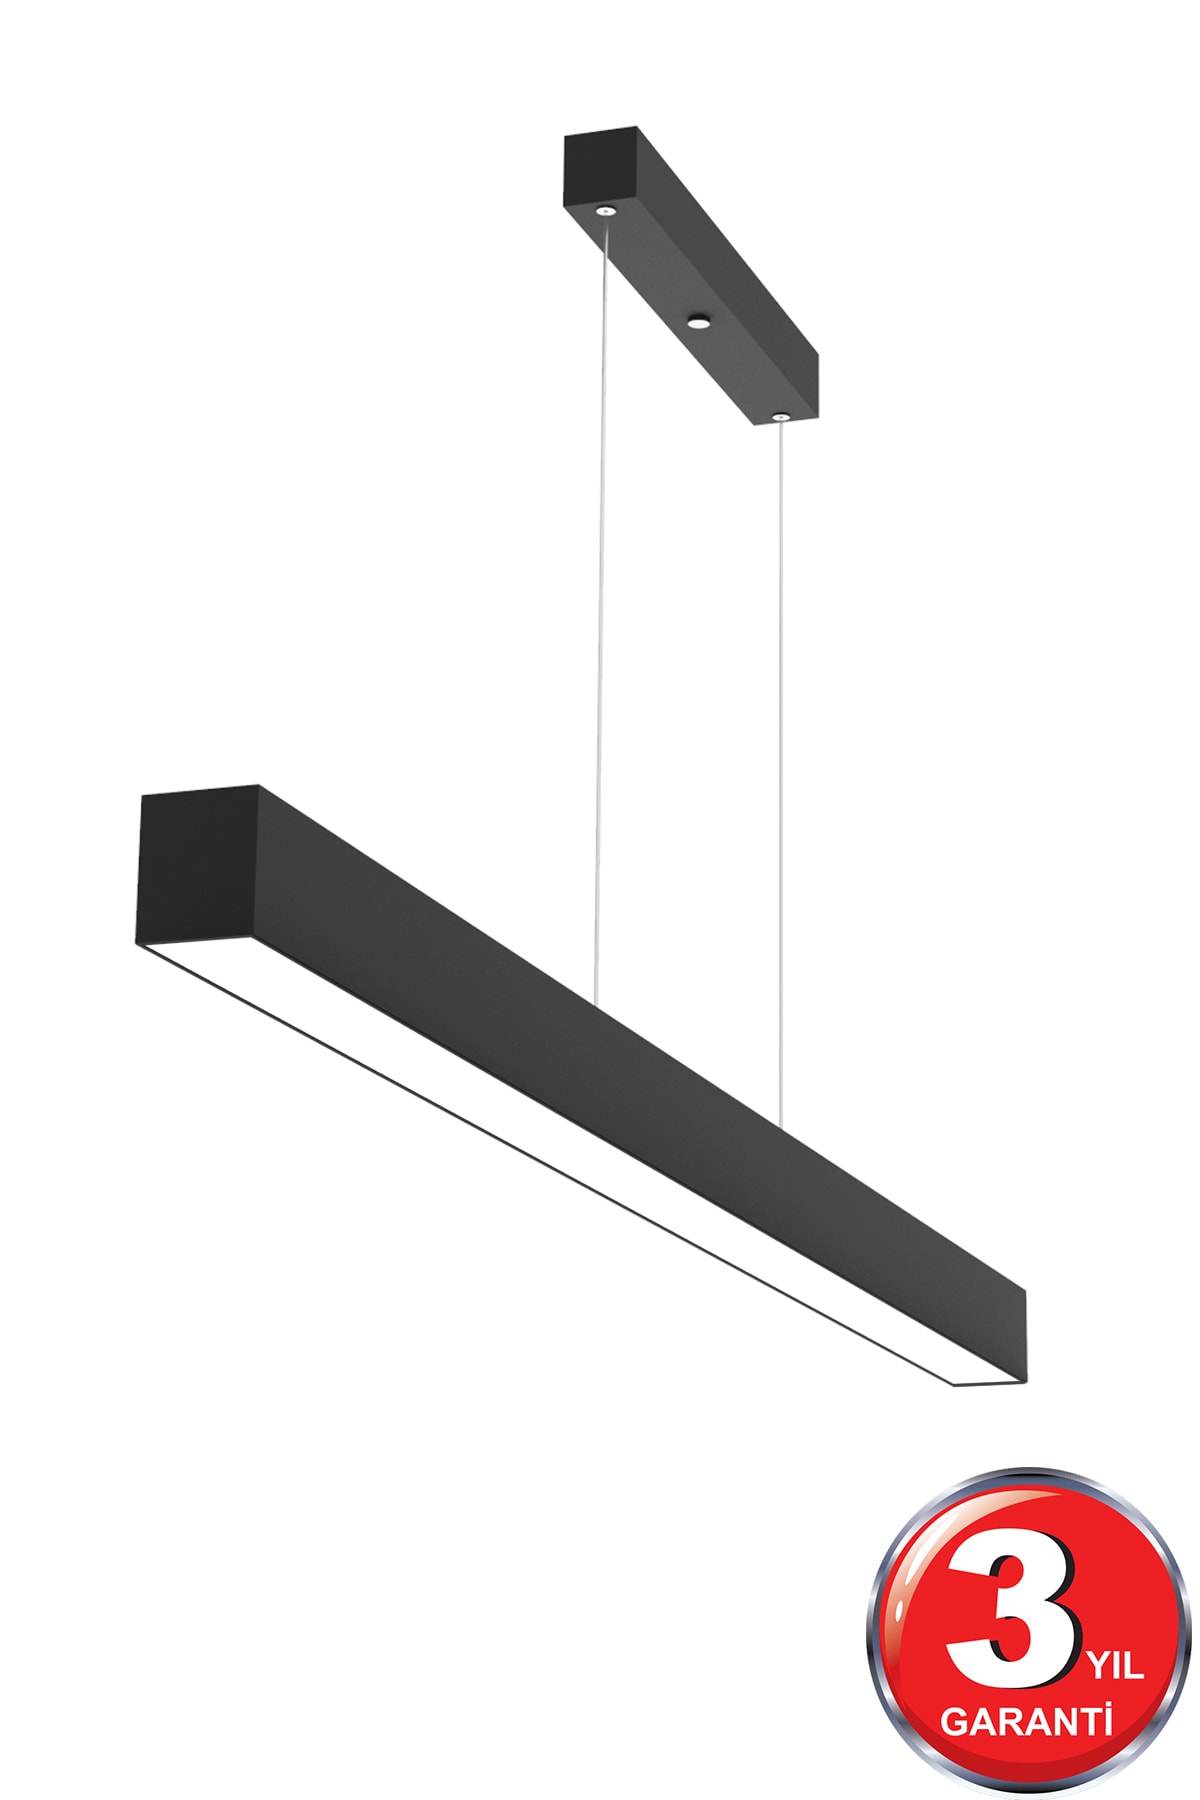 Hegza Lighting Lineer 80cm ( Siyah Kasa, Gün Işığı ) Ledli Sarkıt Modern Led Avize, Salon, Mutfak, Masa Üstü Avize